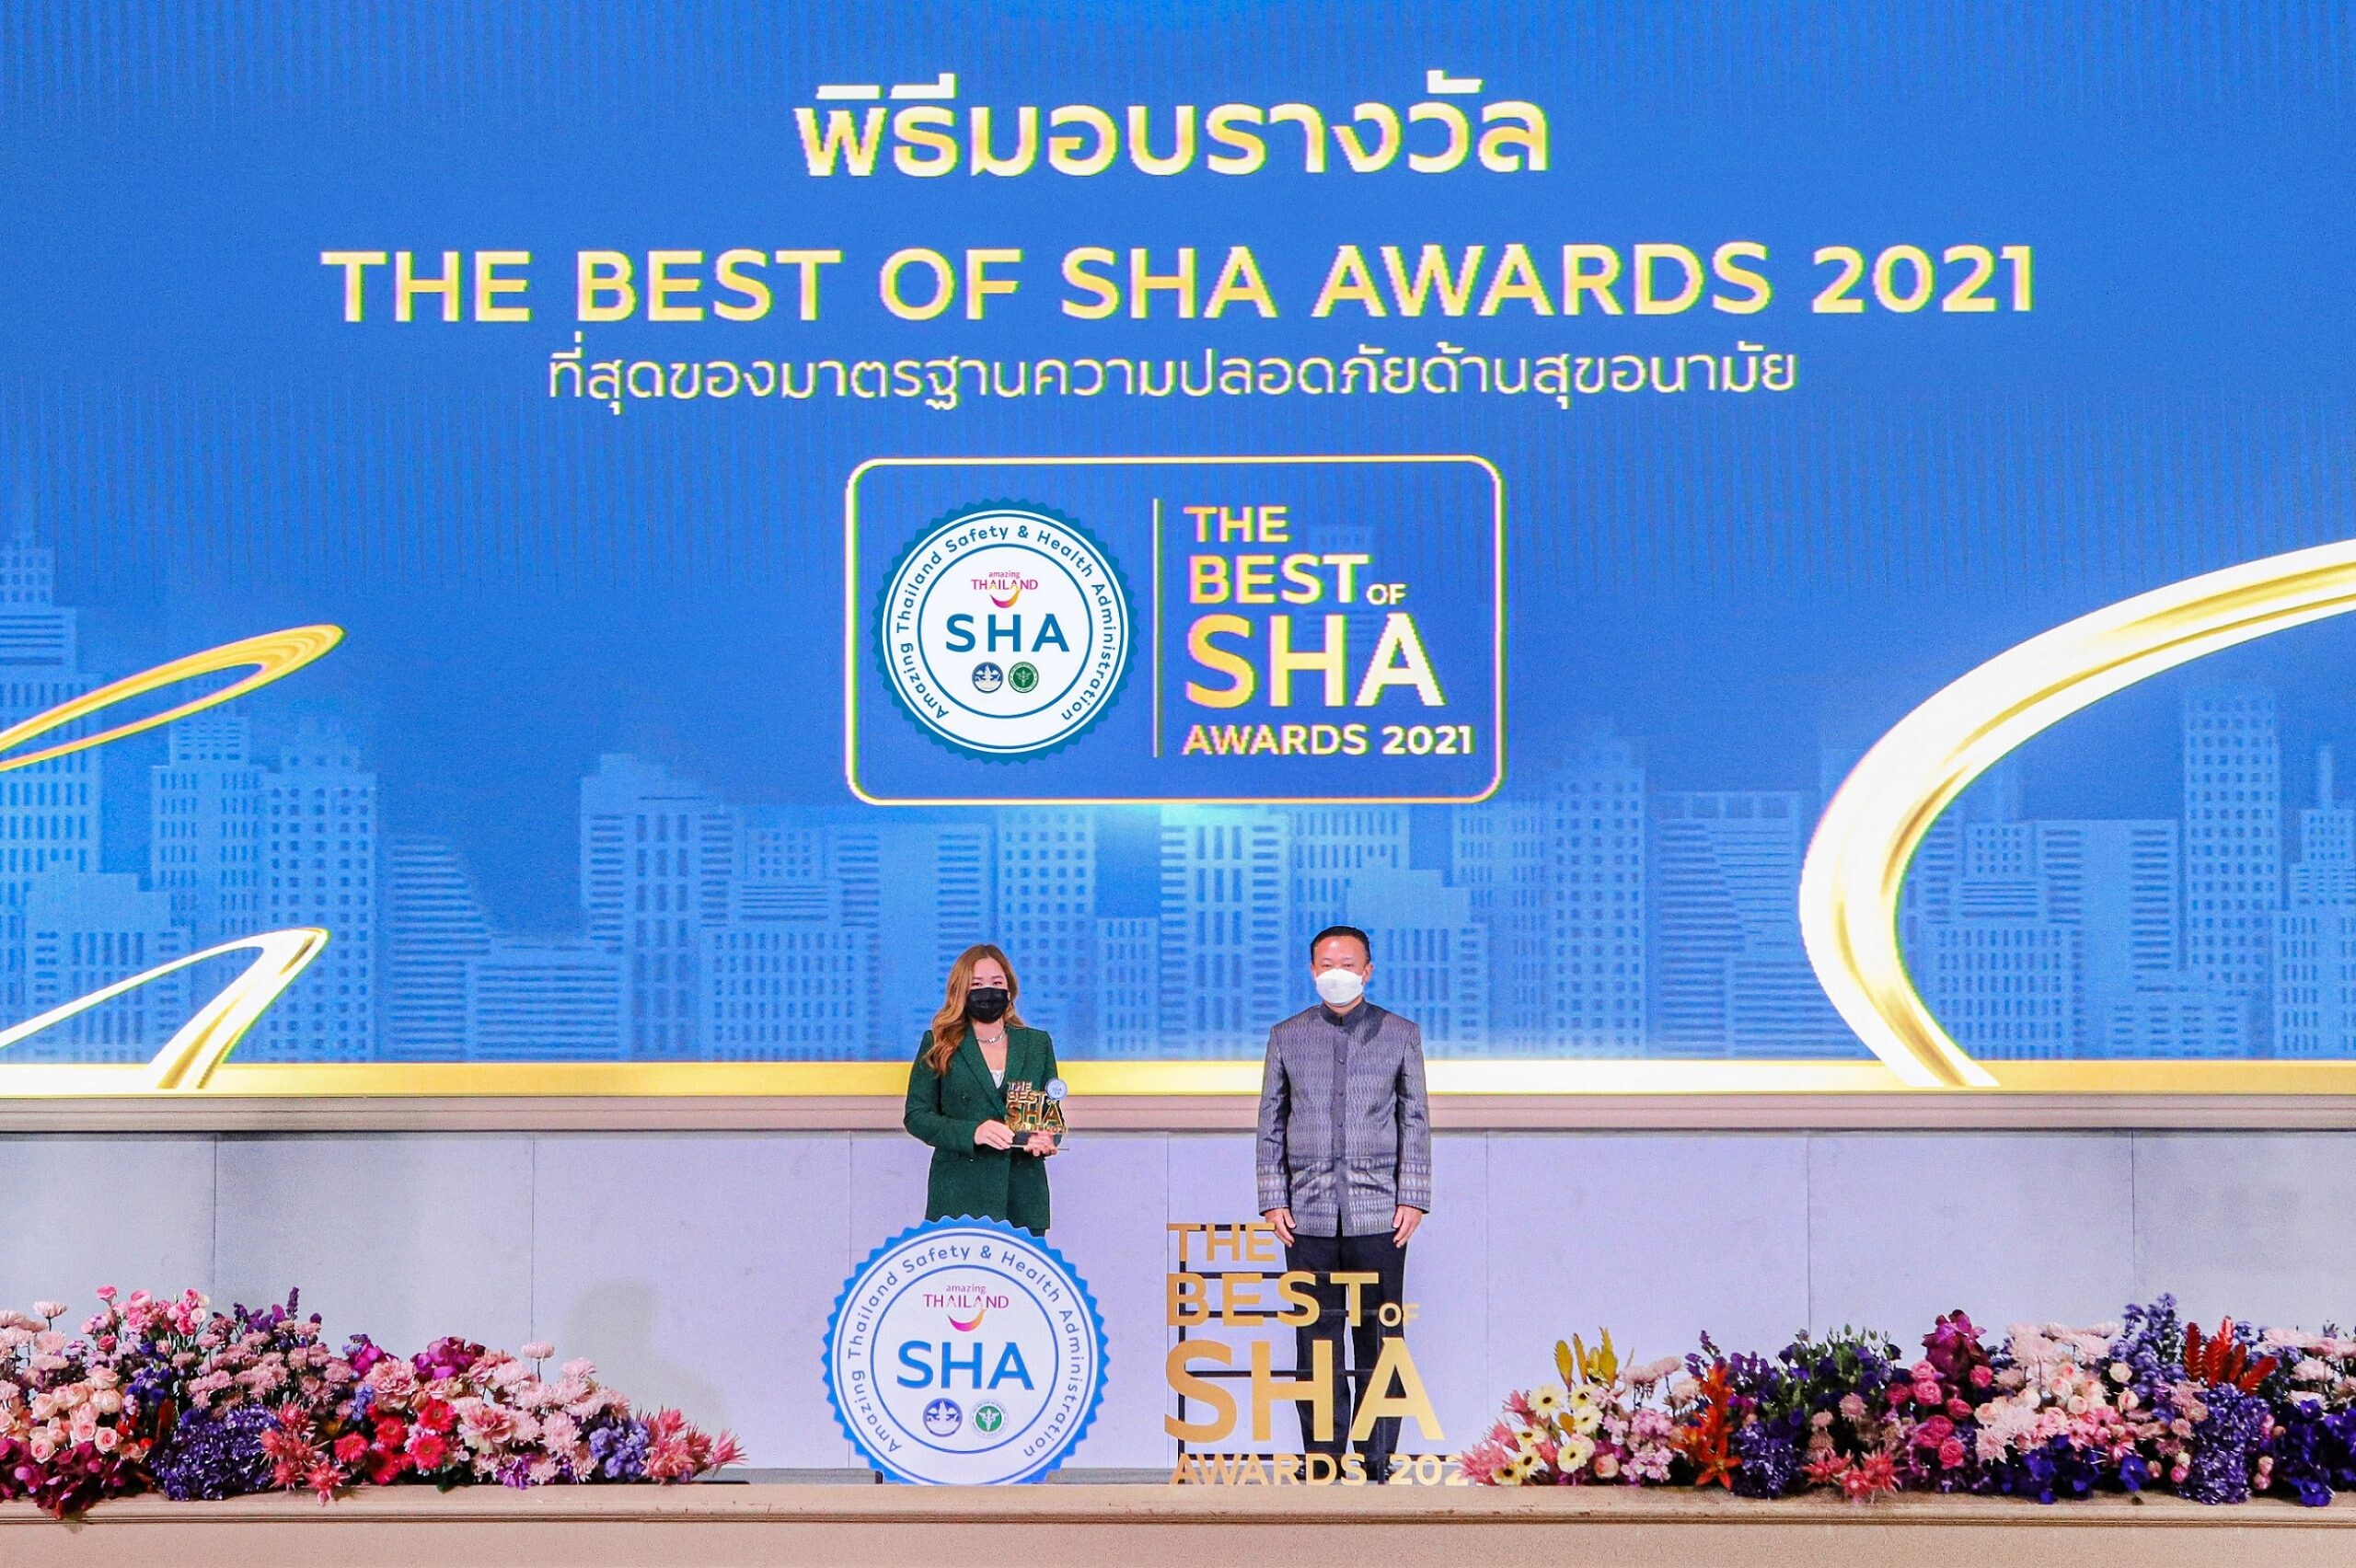 รอยัล คลิฟ พัทยาคว้ารางวัลสุดยอดสถานประกอบการมาตรฐานความปลอดภัยด้านสุขอนามัย "THE BEST OF SHA AWARDS 2021" หนึ่งเดียวในประเทศไทย